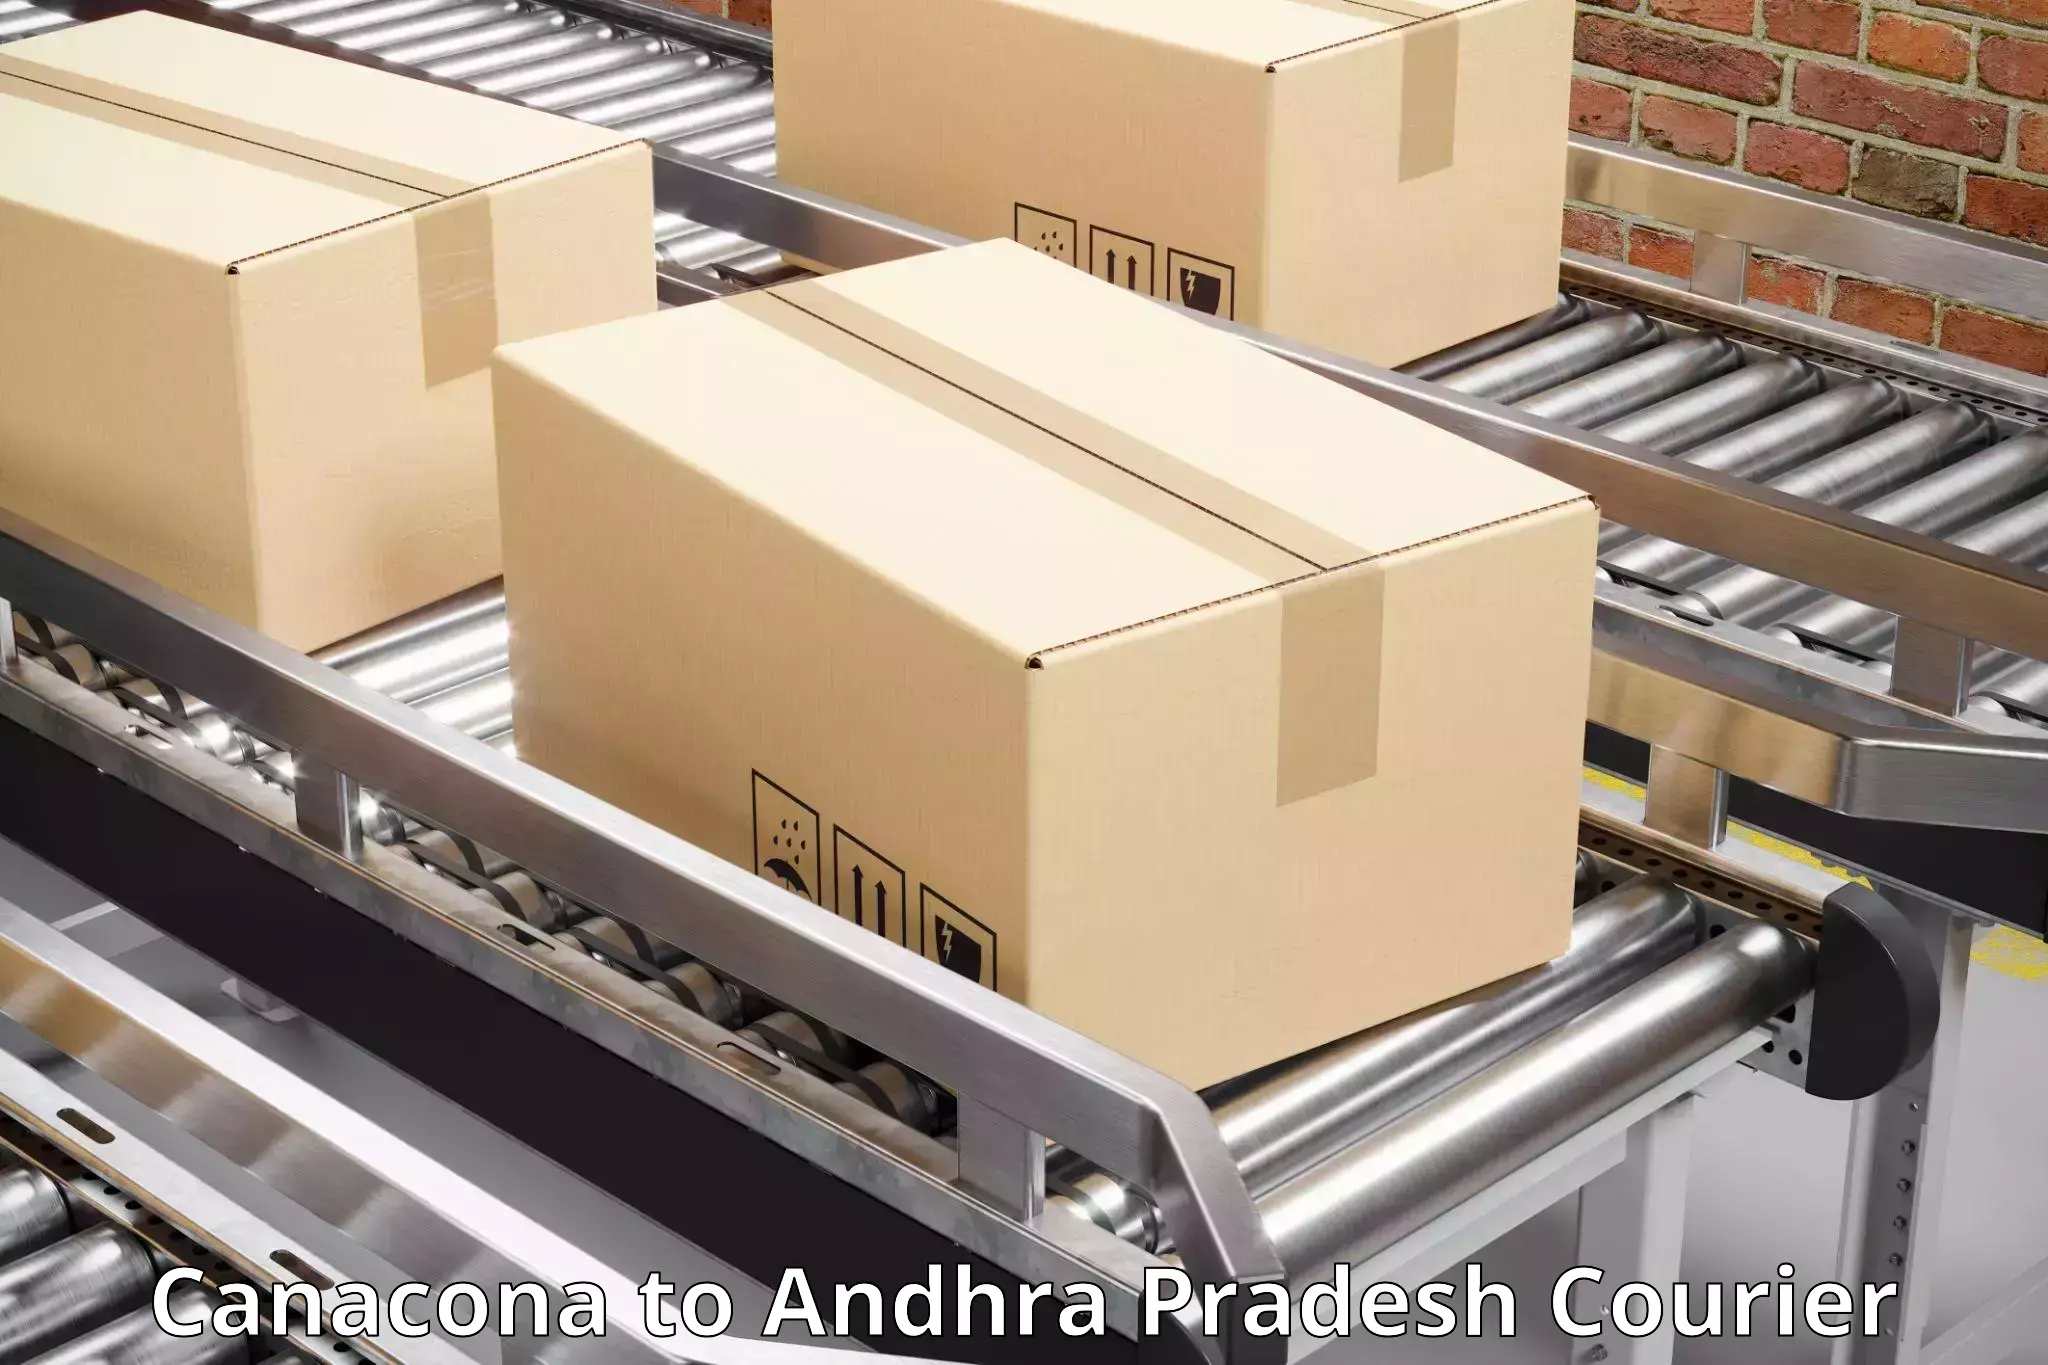 Expedited shipping solutions Canacona to Chodavaram